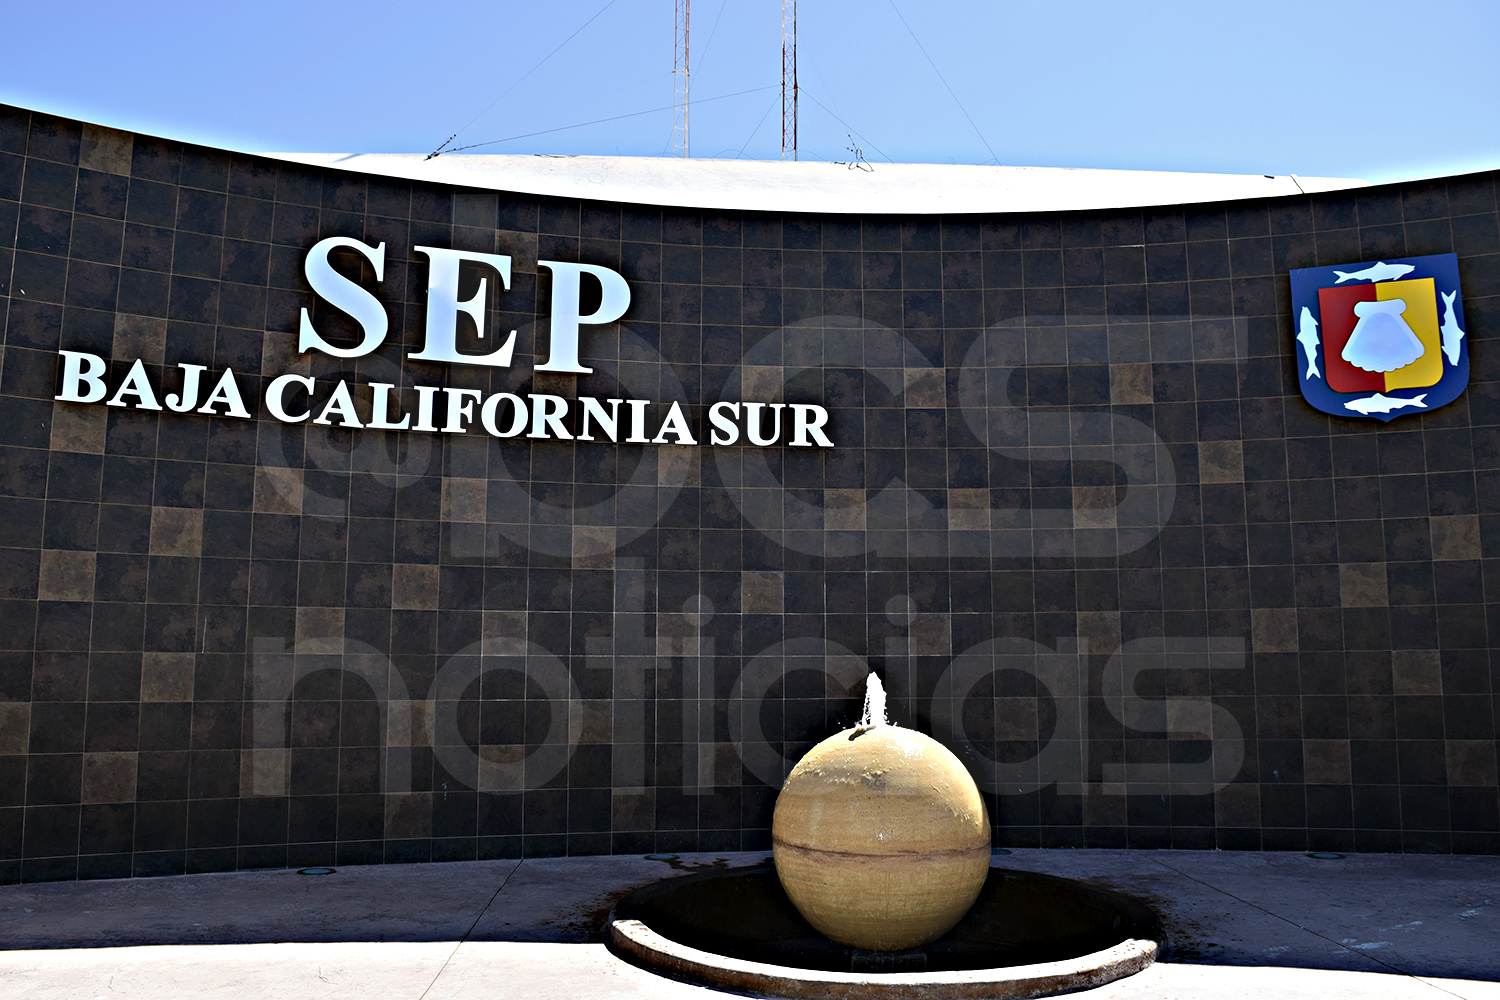 Despidieron a funcionario de SEP en Baja California Sur, tras otorgar plazas a familiares